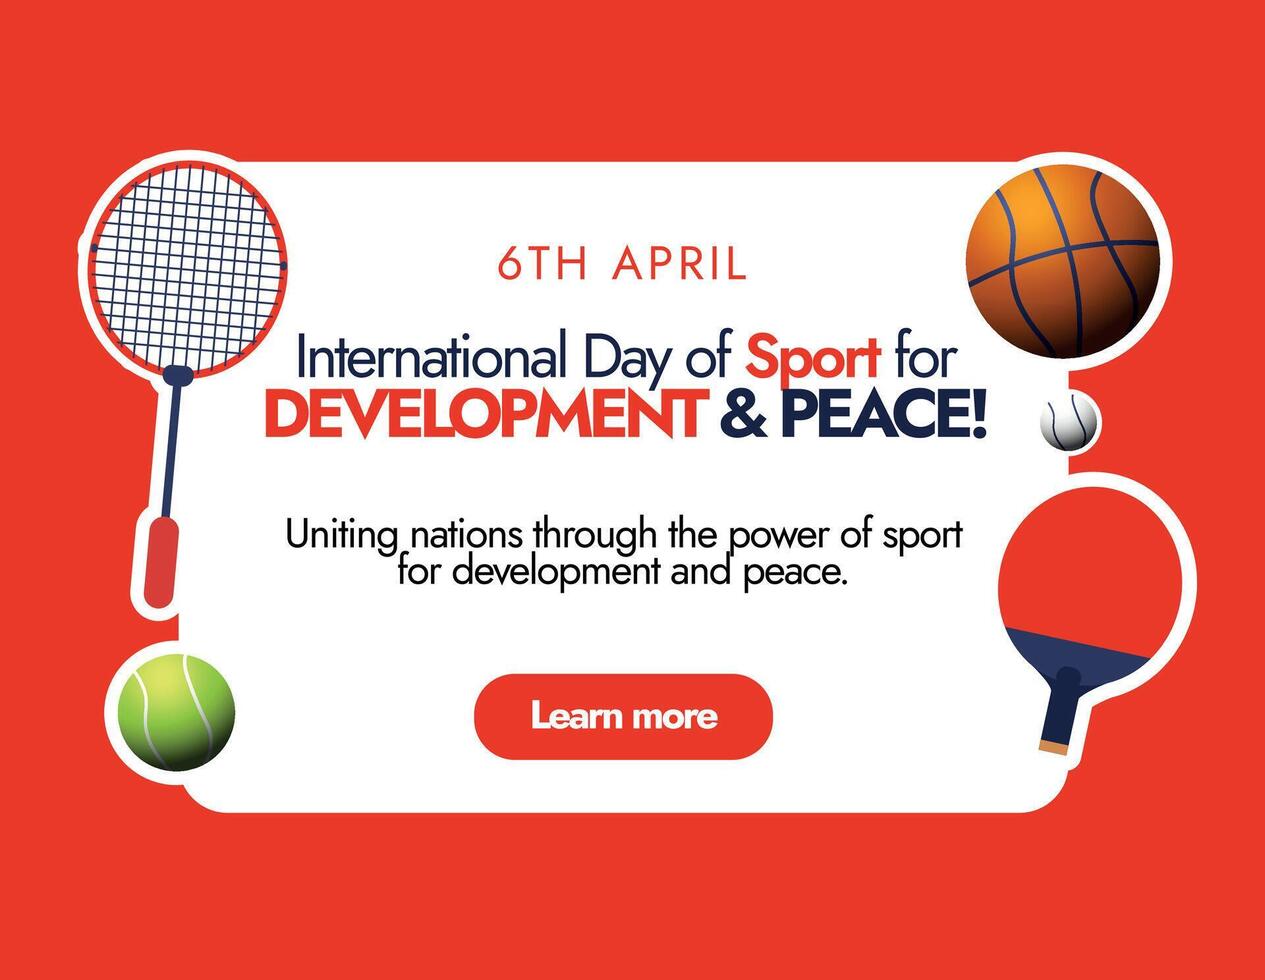 internationell sporter dag. 6:e april internationell dag av sport för utveckling och fred firande omslag baner i mörk röd bakgrund med annorlunda sporter Utrustning tennis boll, racket, basketboll vektor